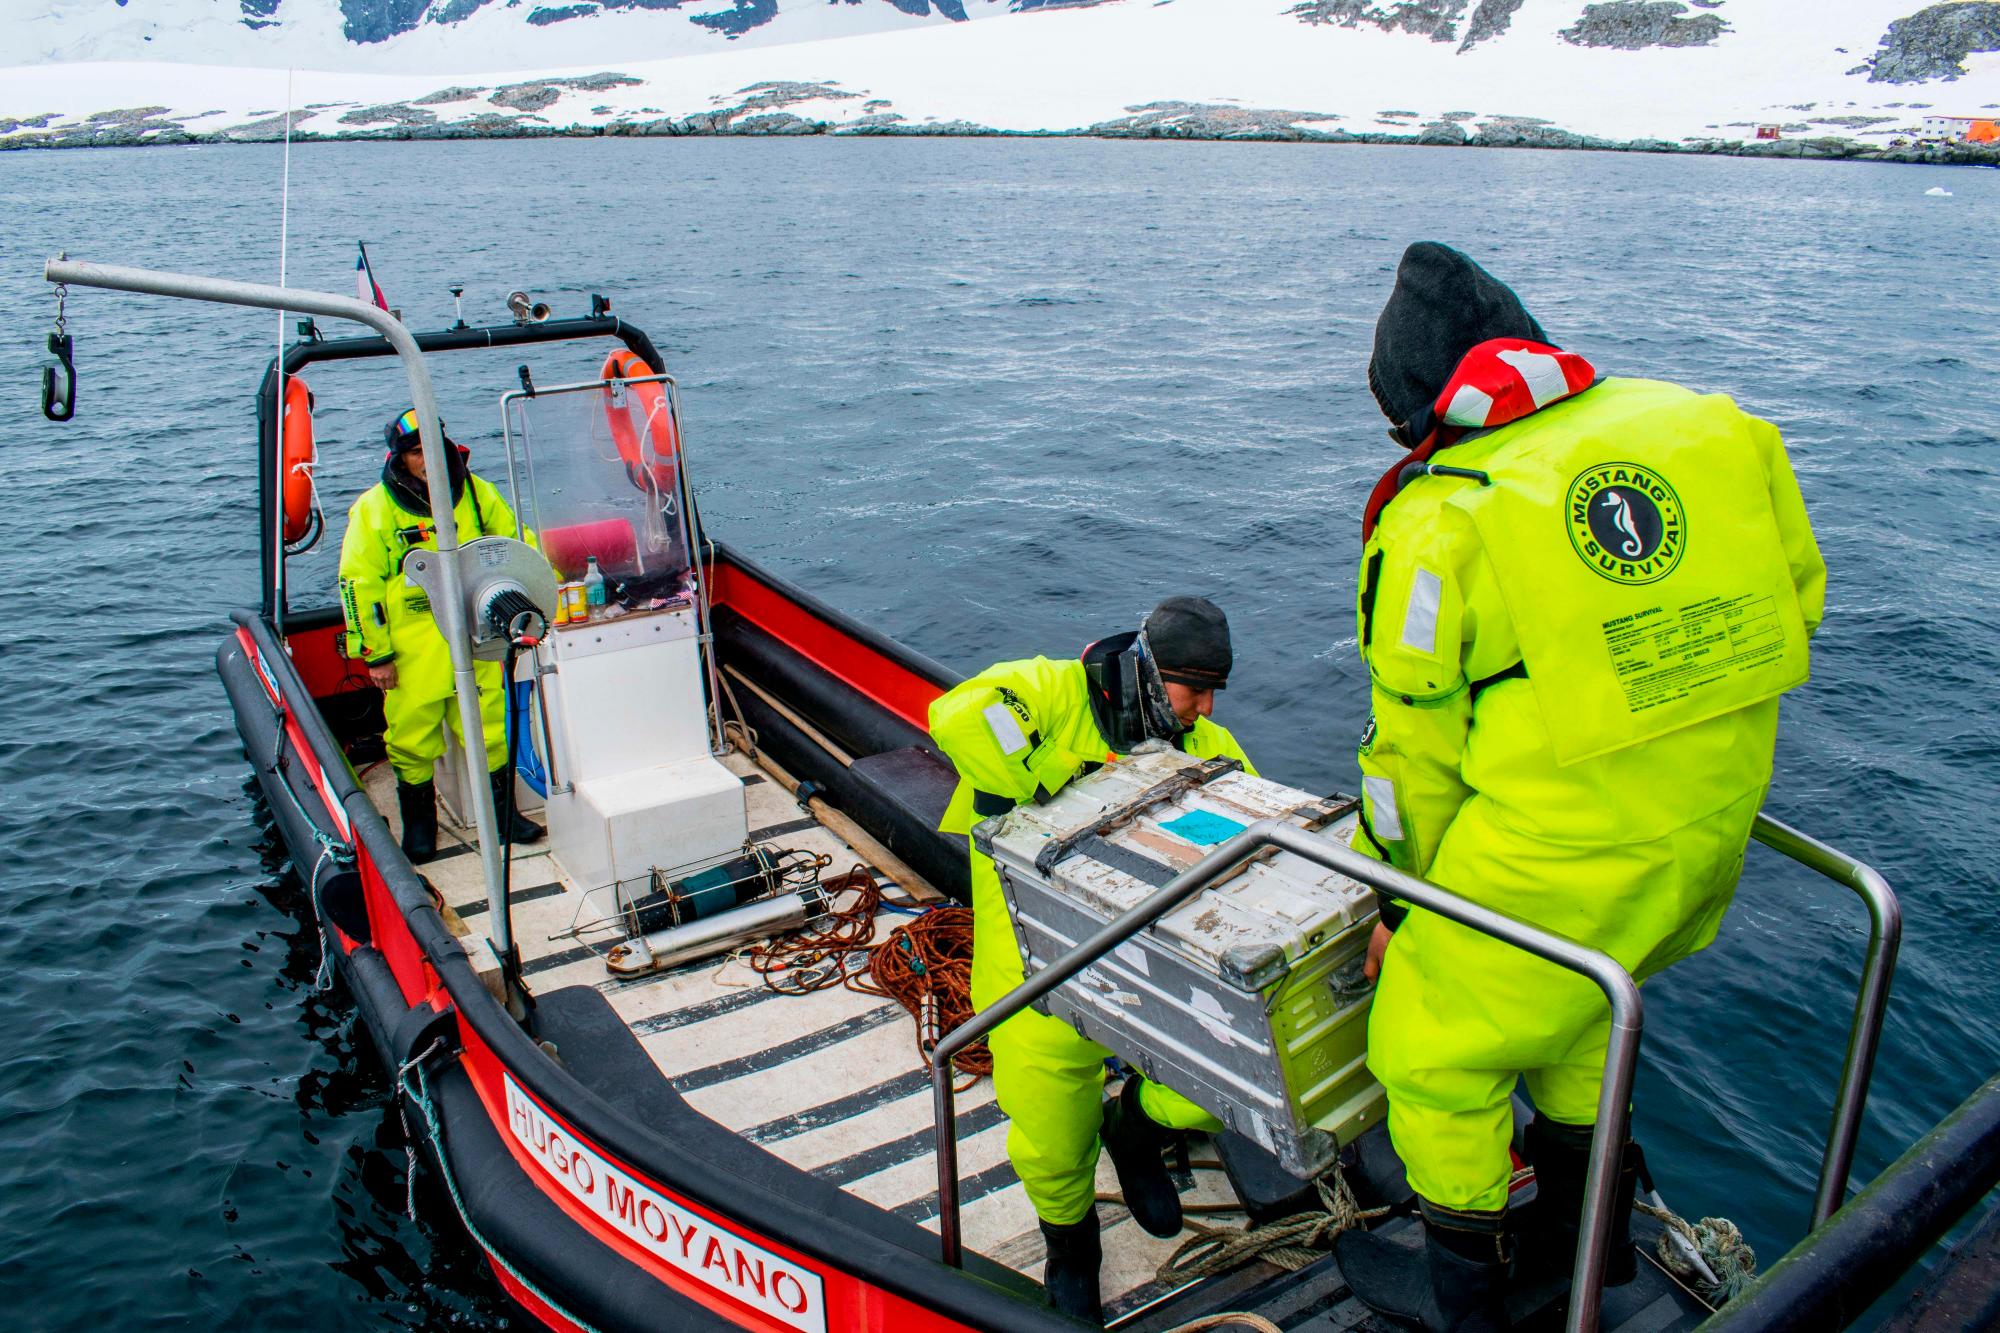 LA ANTÁRTIDA (CHILE), 04/04/2019.- Fotografía cedida de archivo particular, tomada a comienzos de 2019, que muestra a científicos chilenos mientras instalan un sensor para medir el ph del agua de los mares que rodean La Antártida con el fin de obtener datos de las consecuencias del cambio climático a través del monitoreo de los niveles de acidificación de sus aguas. En el marco de la Expedición Científica Antártica (ECA) 55, llevada a cabo entre enero y marzo de este año, los especialistas sumergieron un sensor a 30 metros de profundidad que, entre otras funciones, está destinado a medir el ph del agua. EFE/Paulina Möller